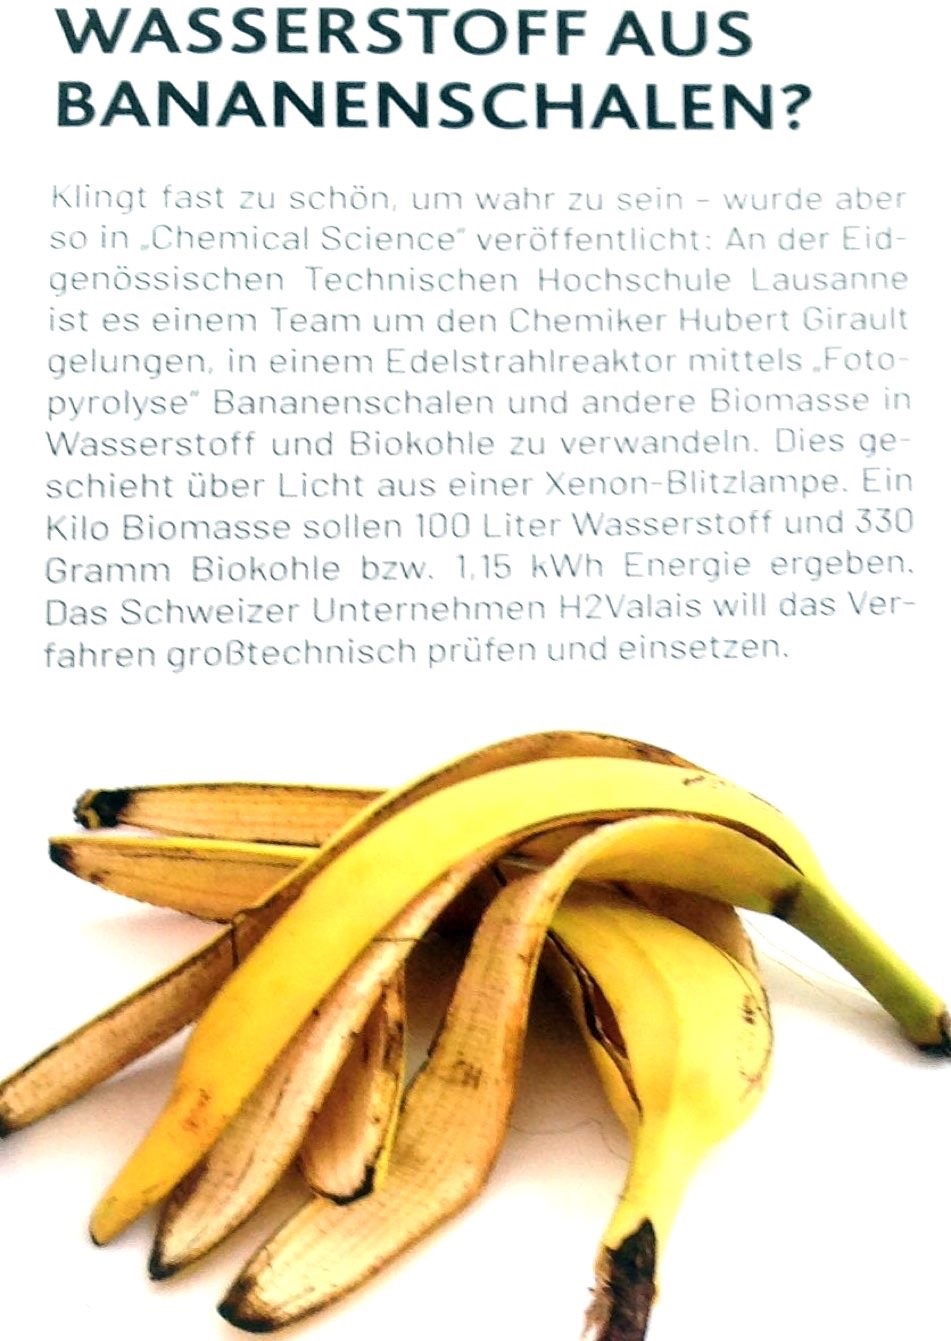 wasserstoff_aus_bananenschalen_2.jpg